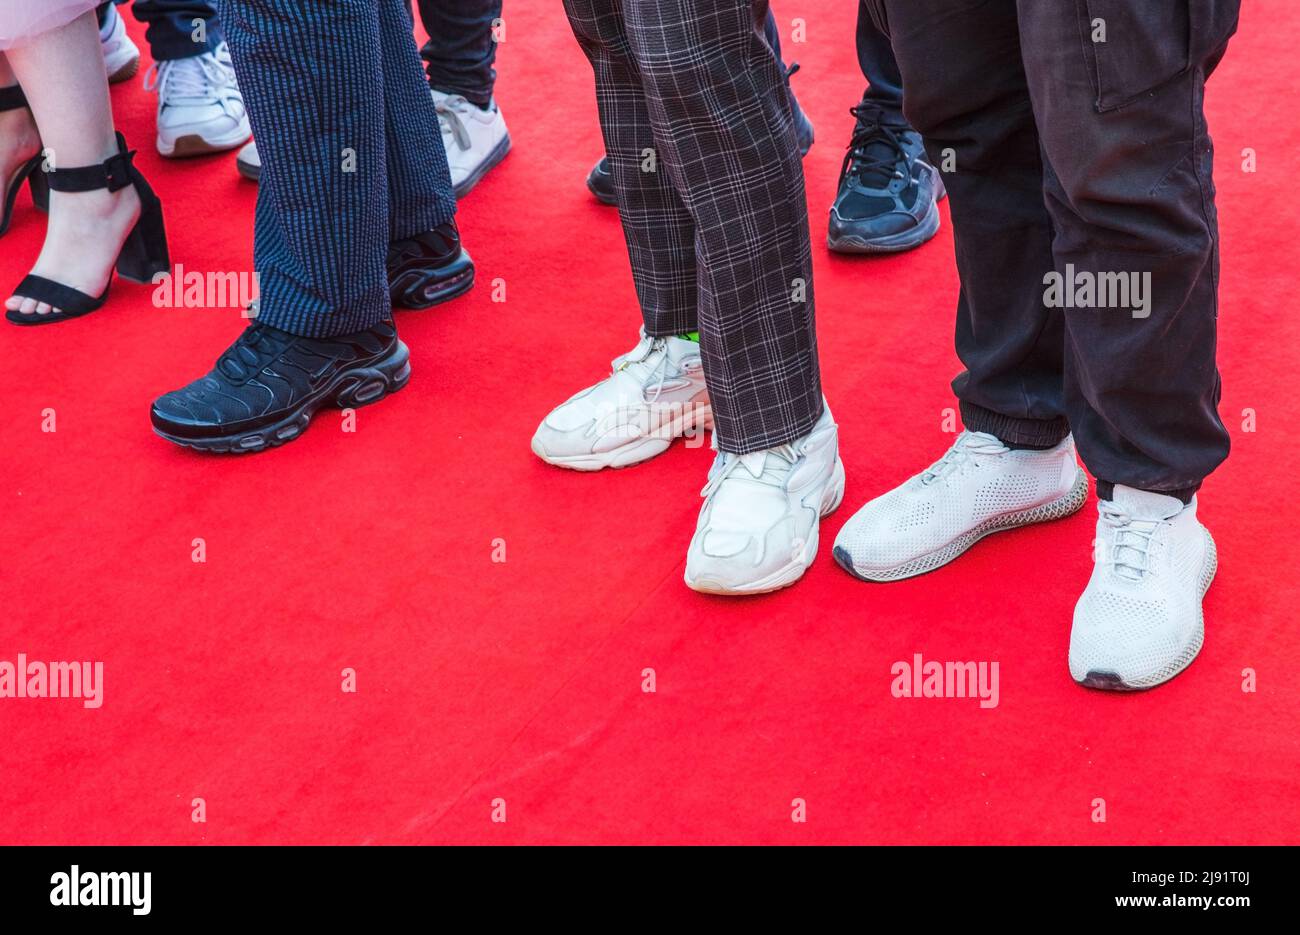 Pies de invitados de baile de pie sobre una alfombra roja, foto de cerca Foto de stock